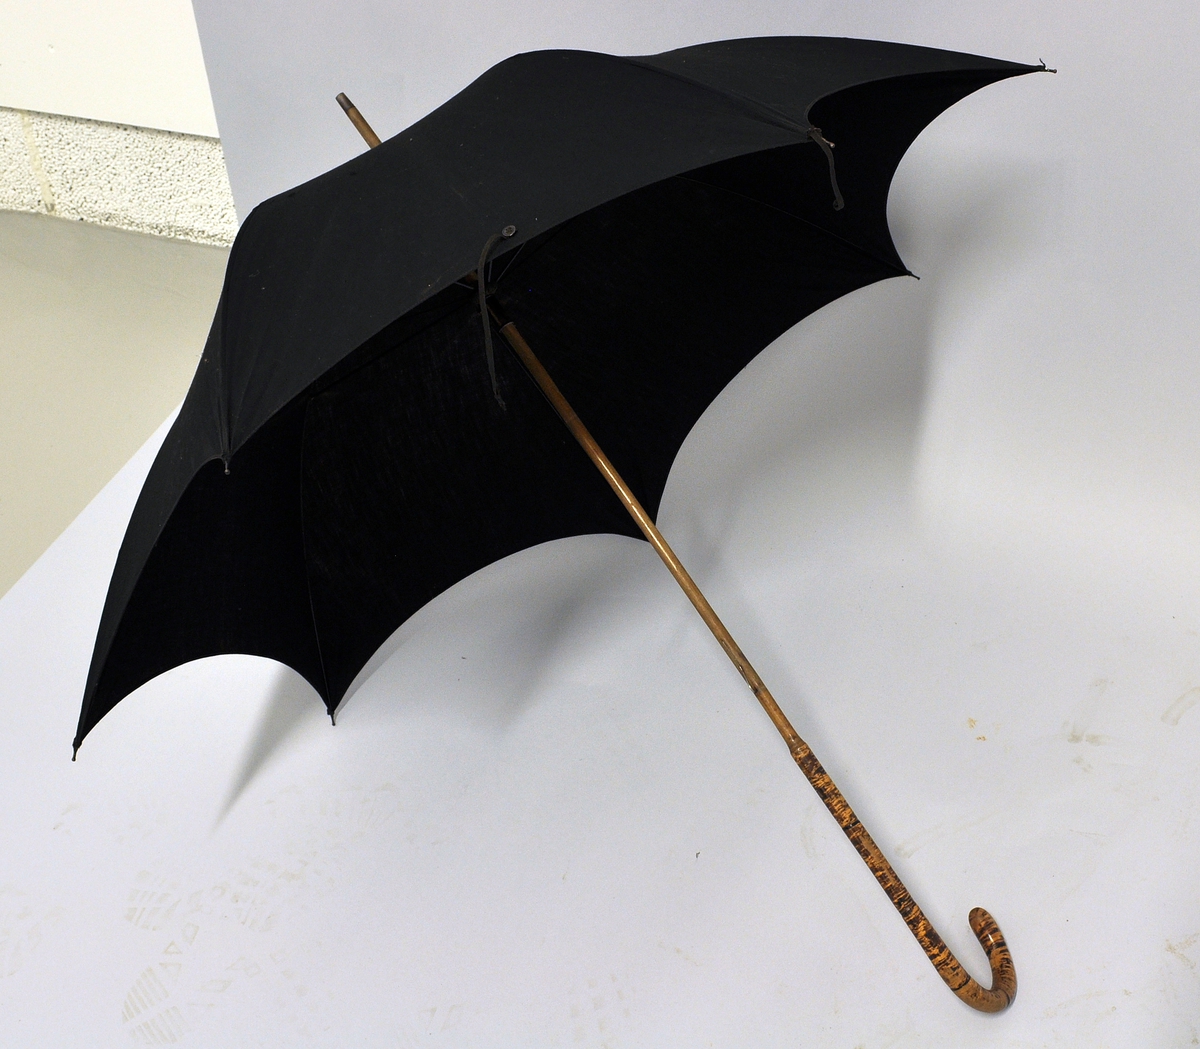 Sort stoffparaply med bøyd håndtak av tre.